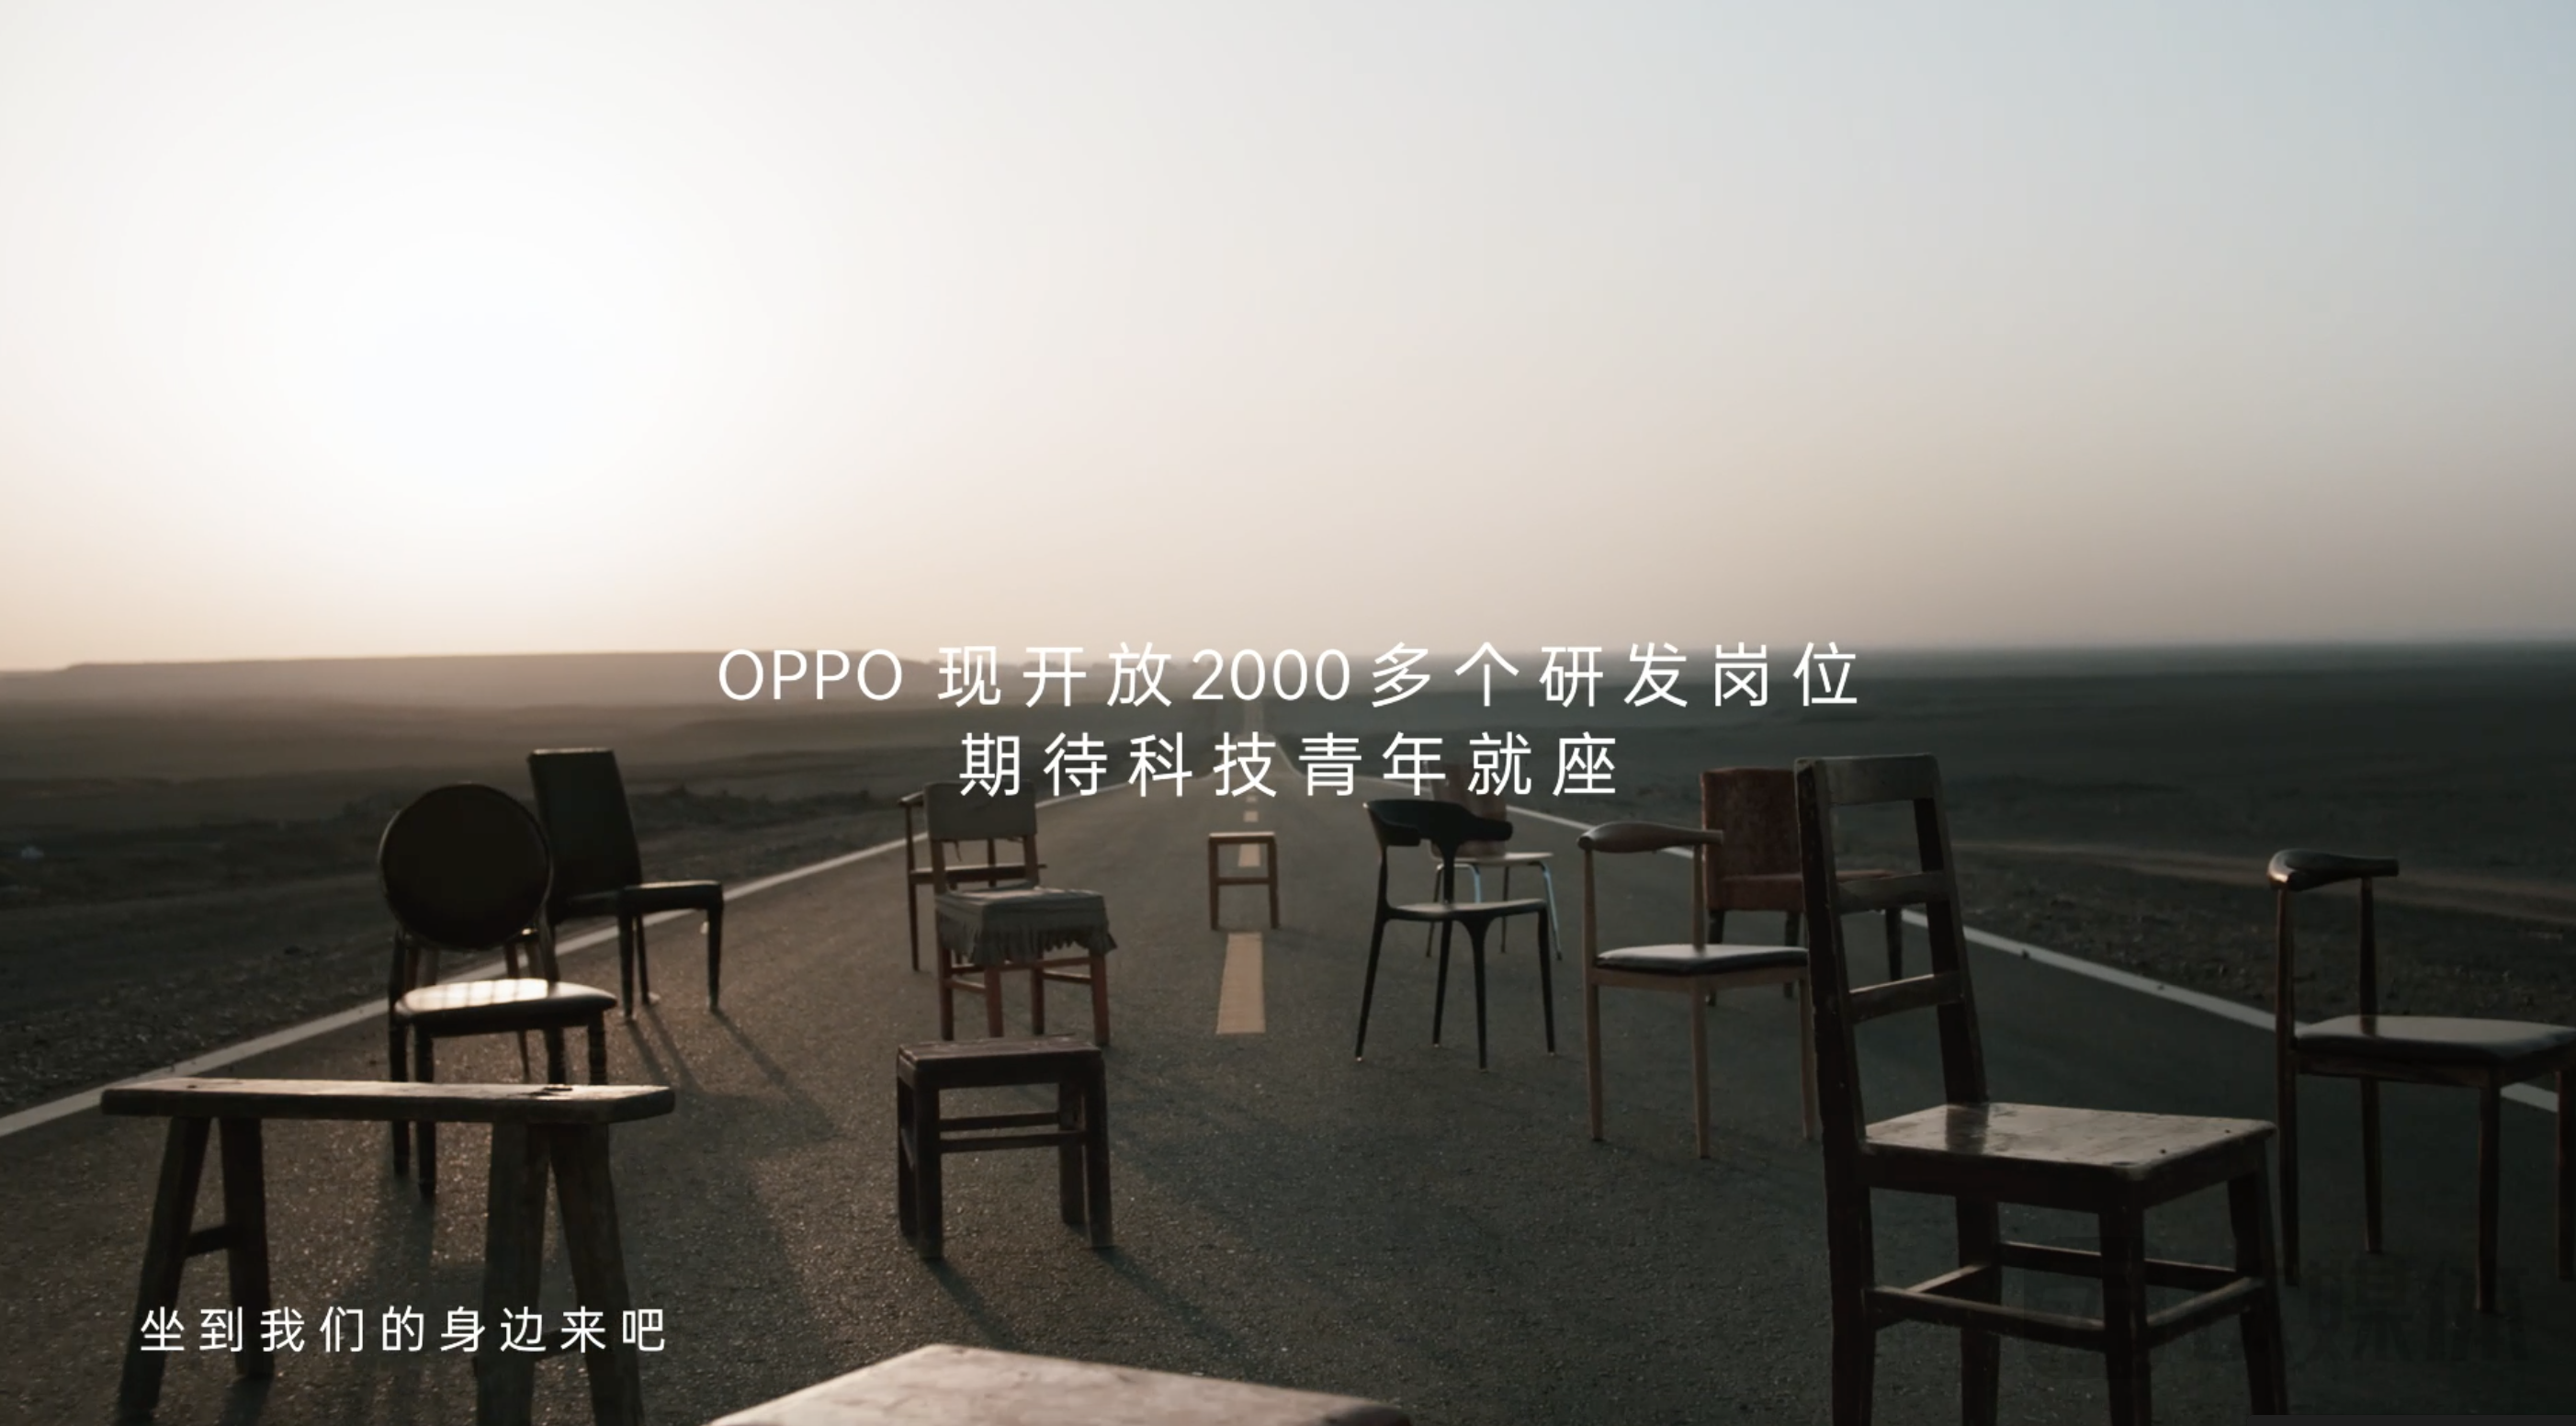 oppo工厂招聘(OPPO再招2000)-观澜富士康官方直招